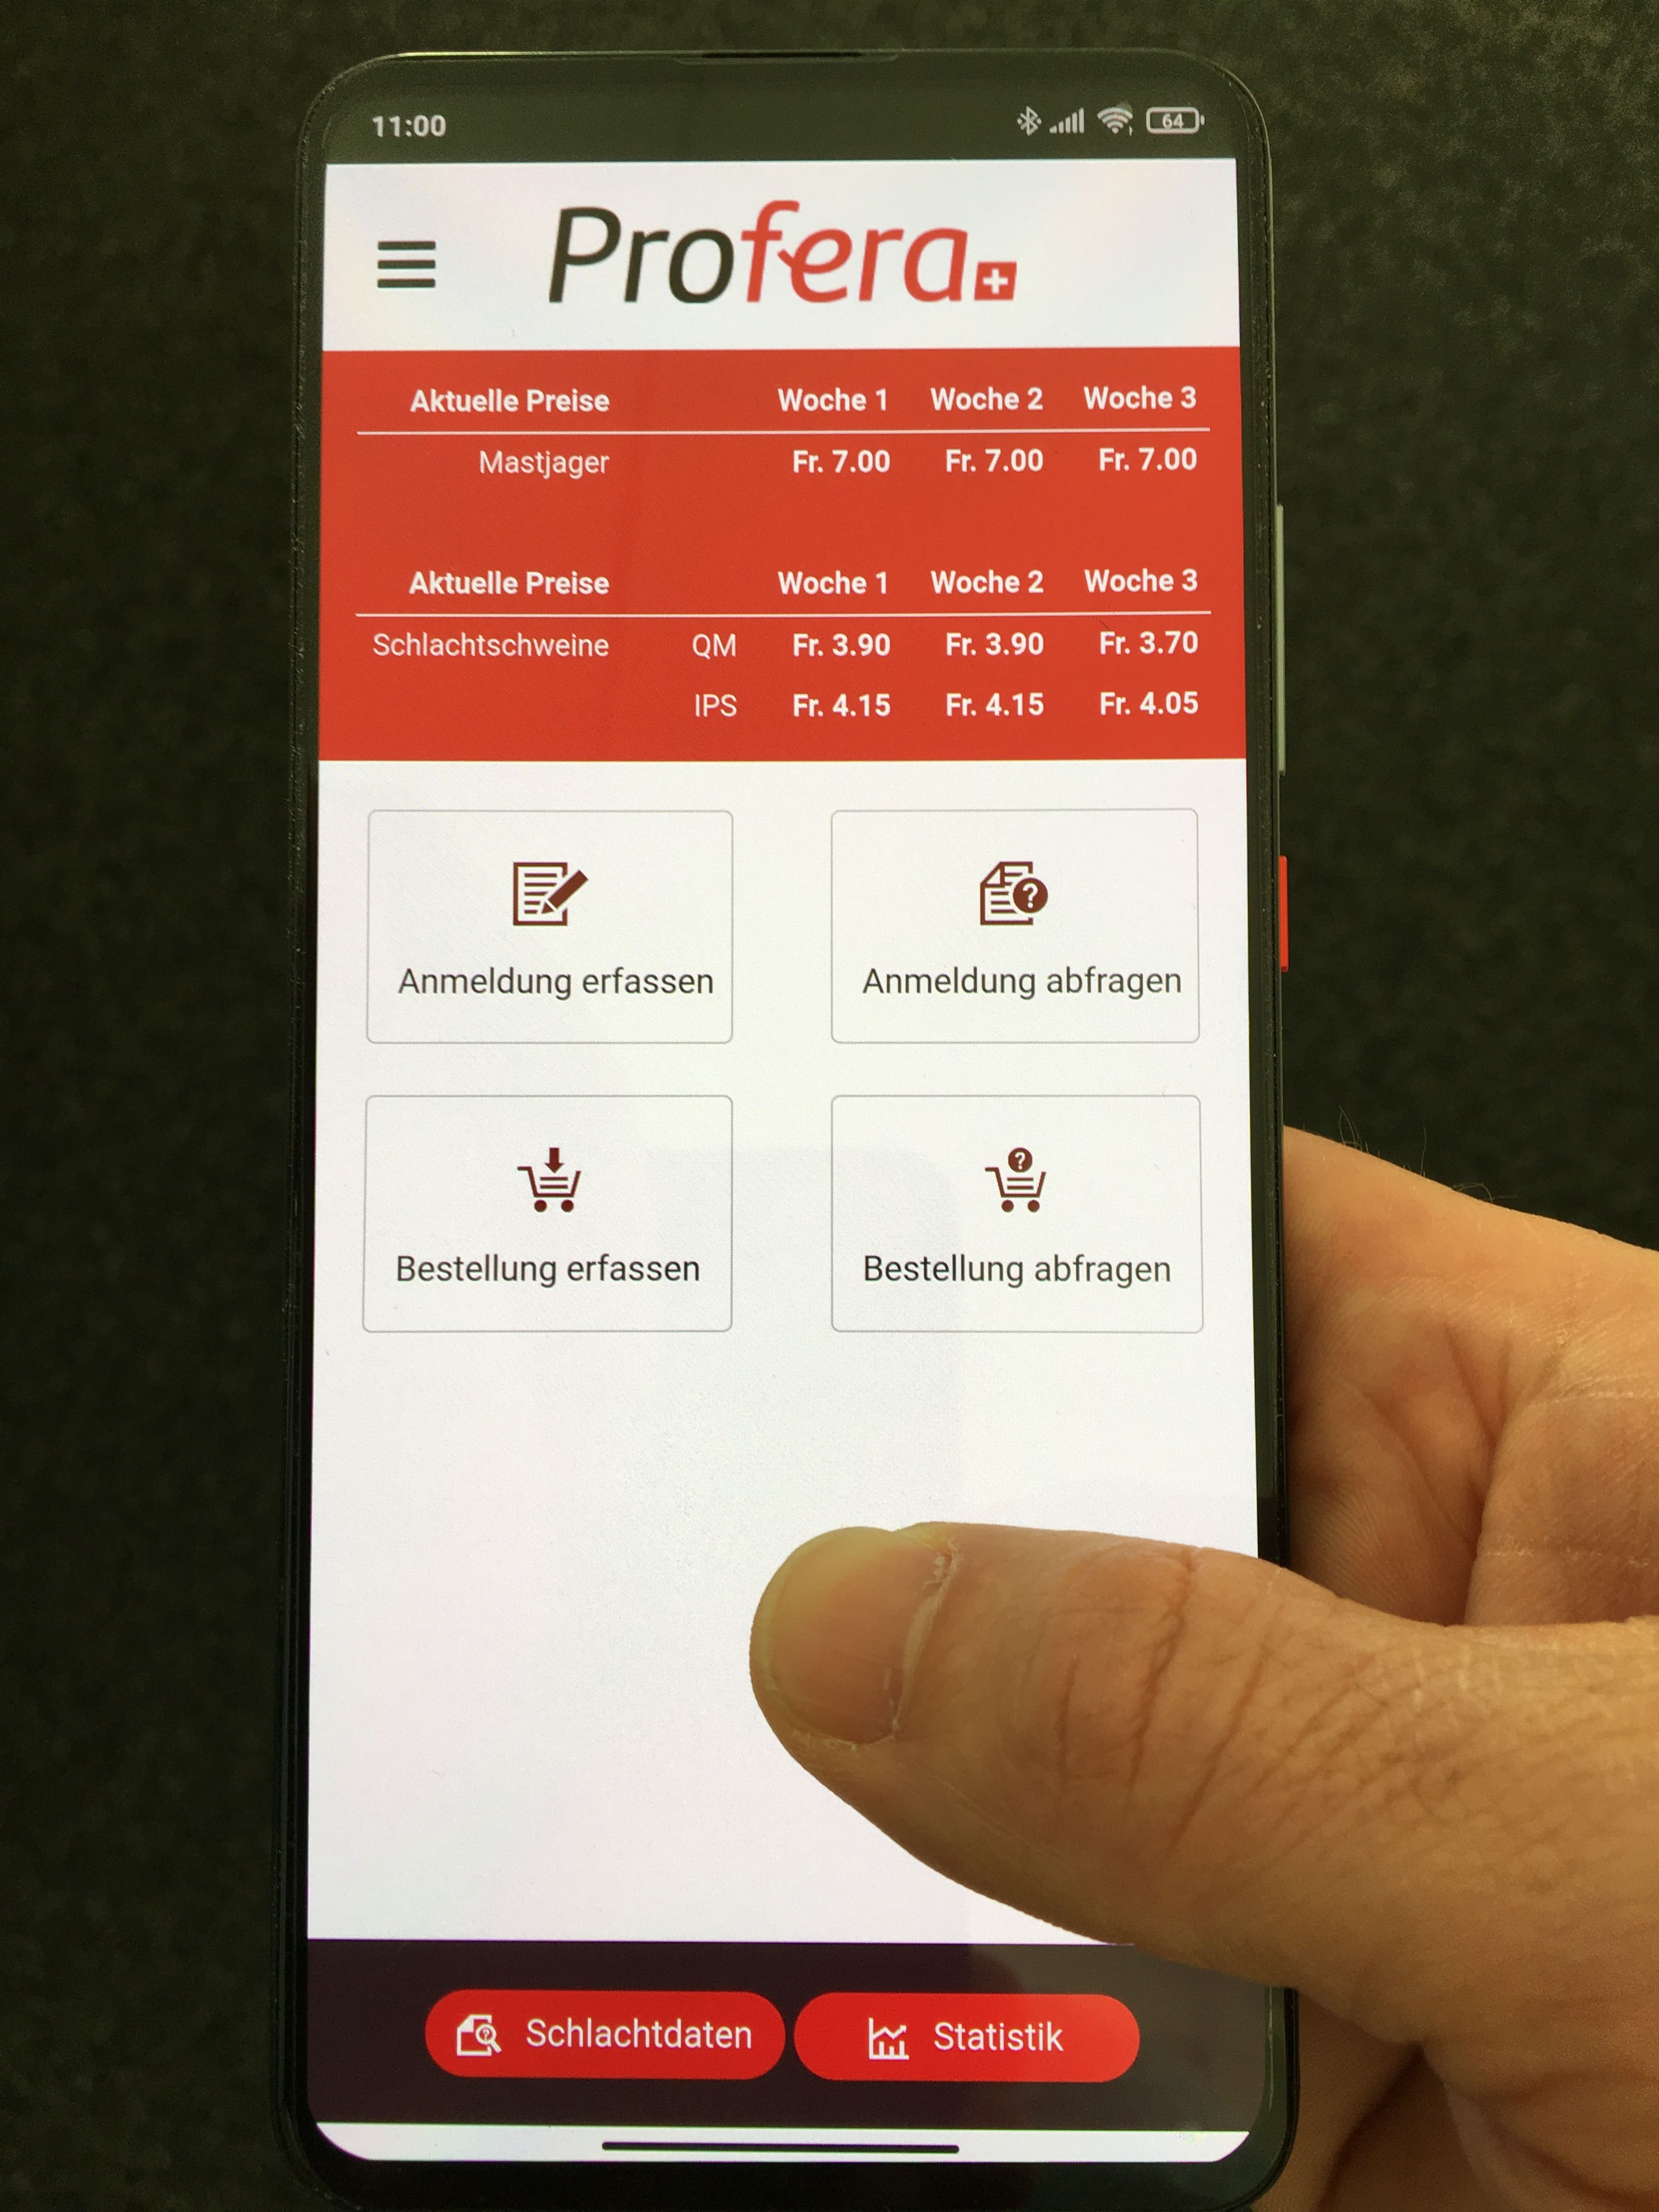 Profera App: Einfach in der Bedienung, genial in der Umsetzung.